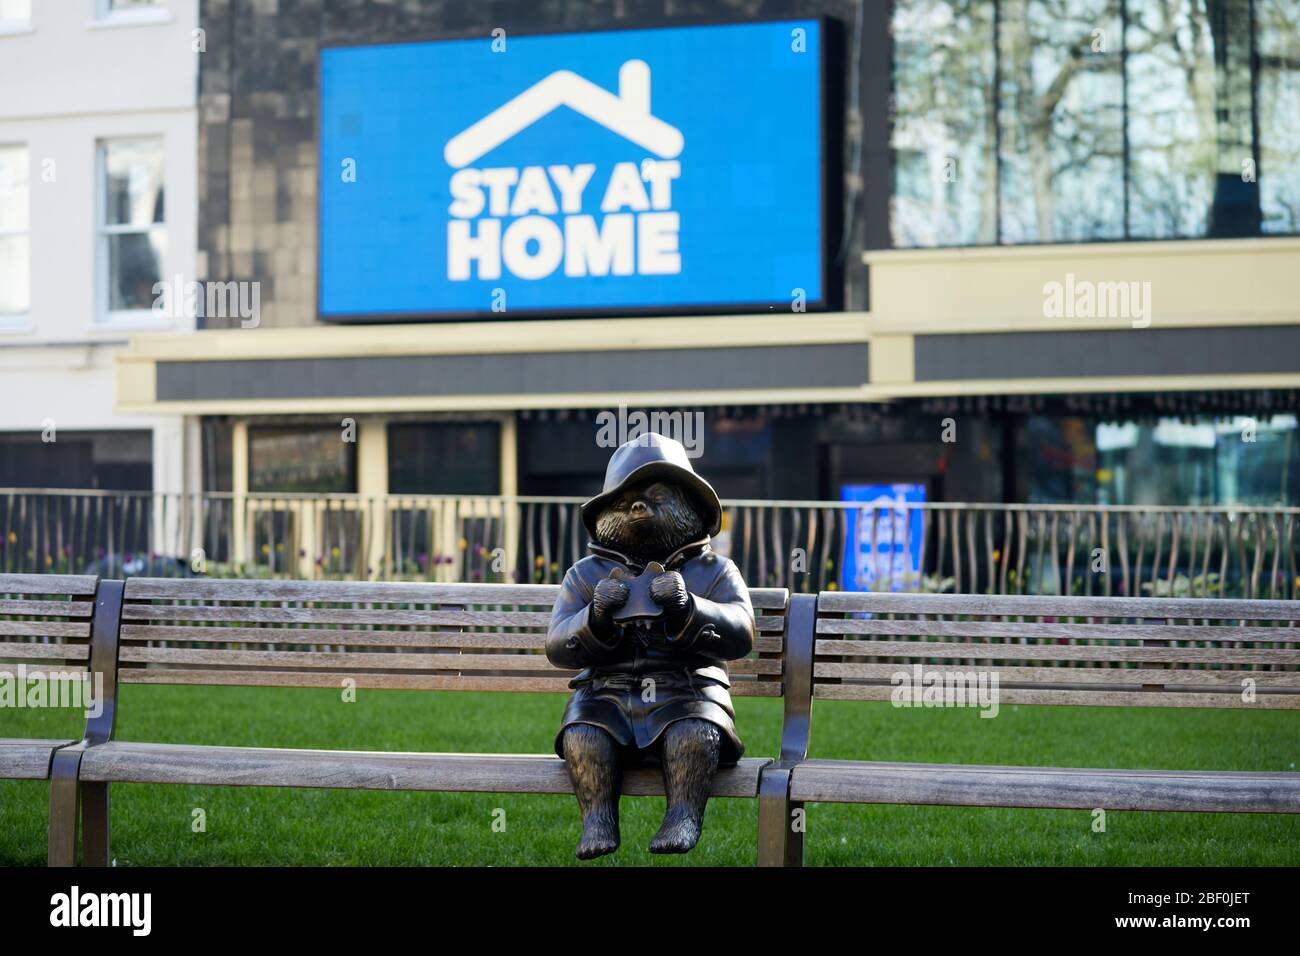 London, Großbritannien - 16 Apr 2020: Eine Statue des Paddington Bären am Leicester Square, vor einem Schild, das den Menschen aufzeigt, während der Sperrung der Coronavirus-Pandemie Covid-19 zu Hause zu bleiben. Stockfoto